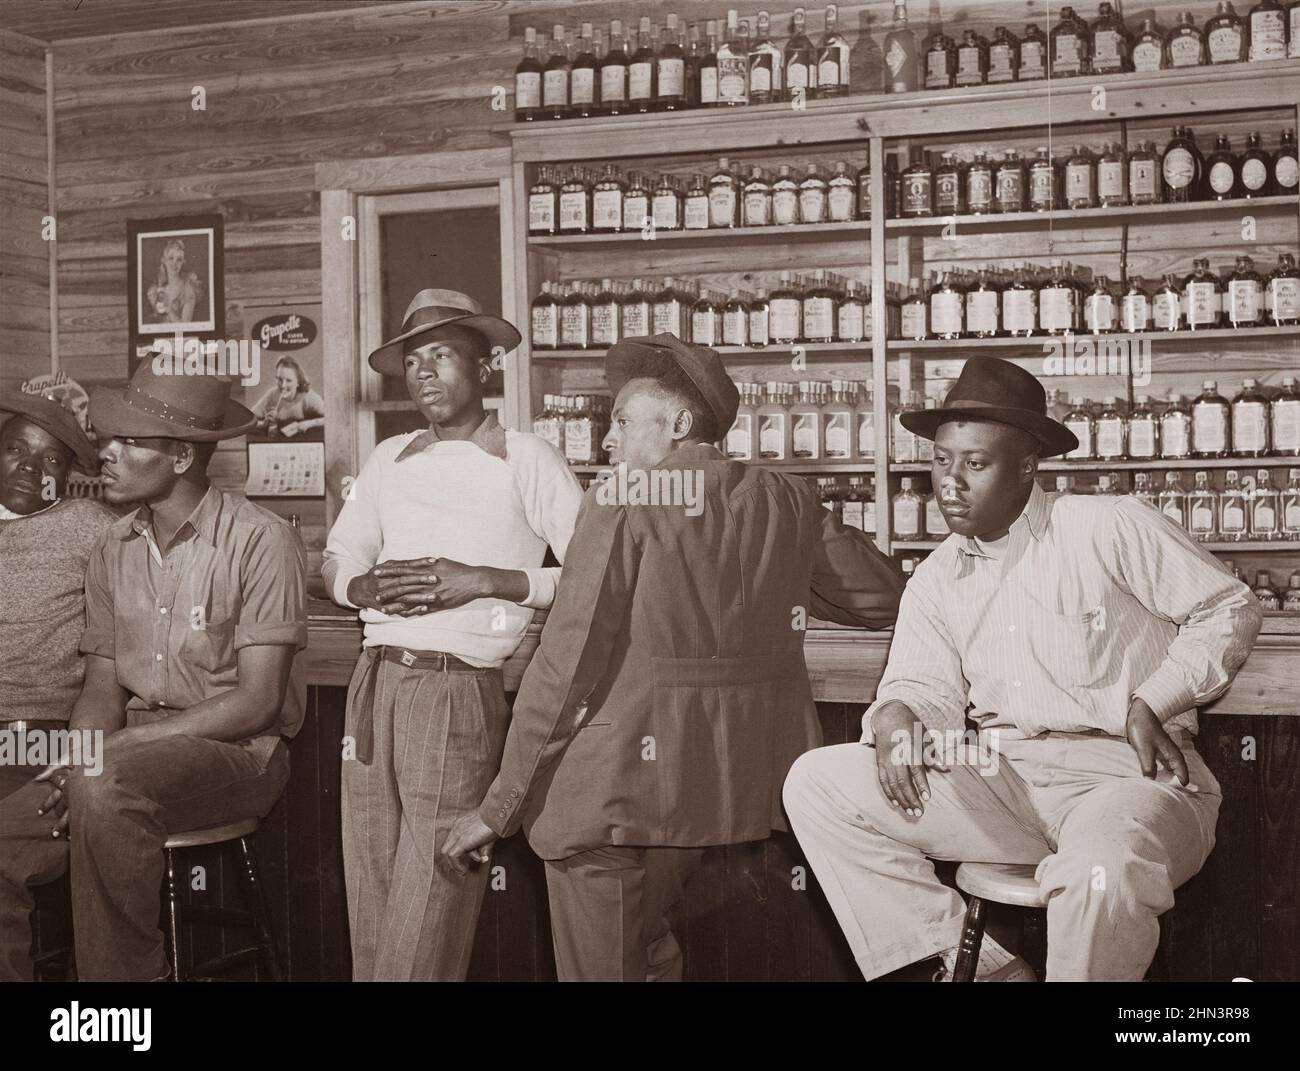 Foto d'epoca del Sud Americano nel 1940s. Juke joint e bar nella zona di Belle Glade, sezione vegetale della Florida centro-meridionale. Febbraio 1941 Foto Stock